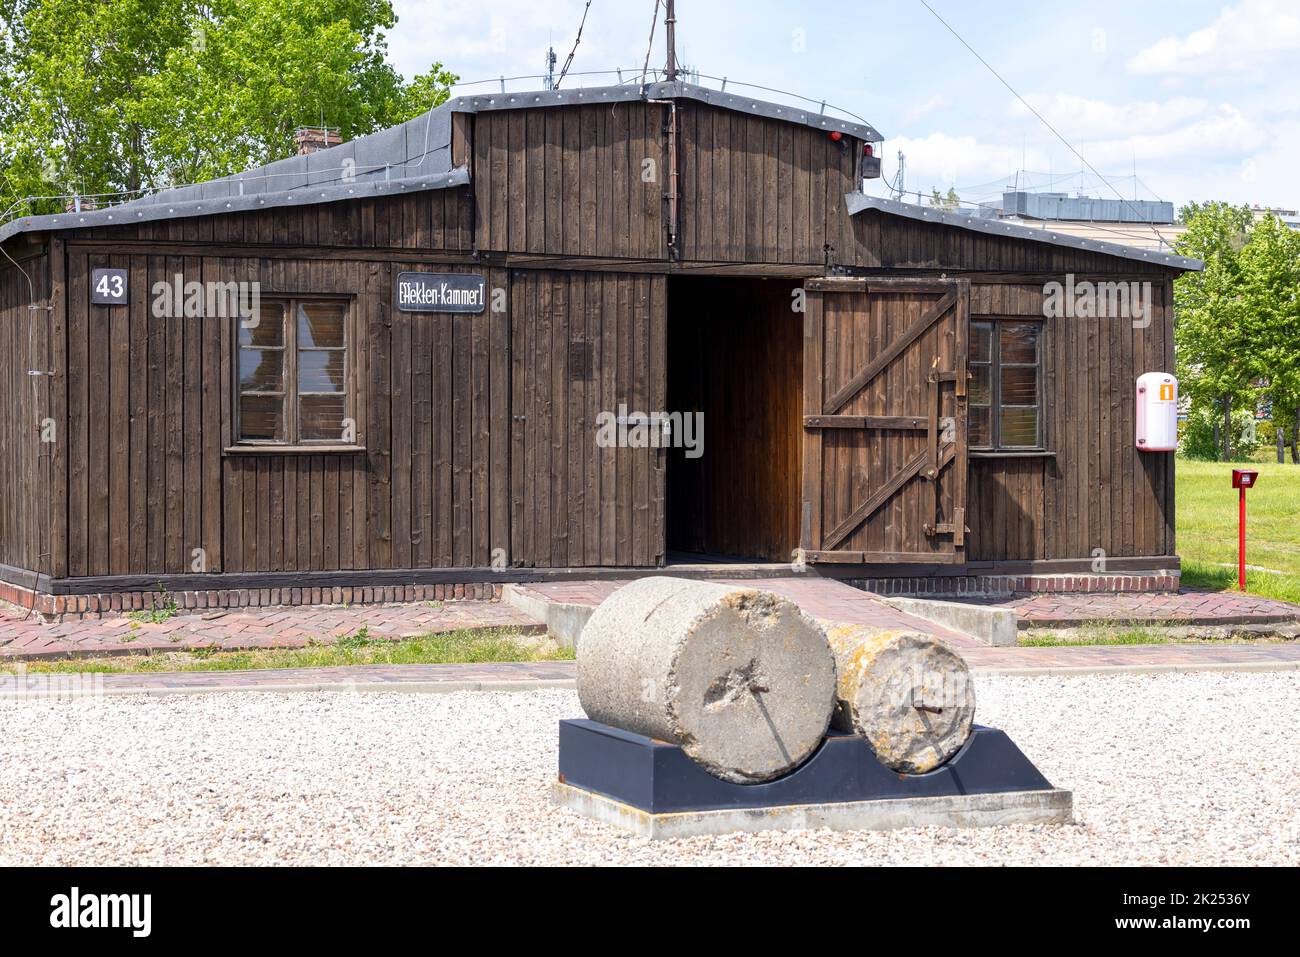 Majdanek; Lublino; Polonia - 25 maggio 2022: Campo di concentramento e sterminio nazista di Majdanek (Konzentrationslager Lublino), vista della baracca di legno eh Foto Stock